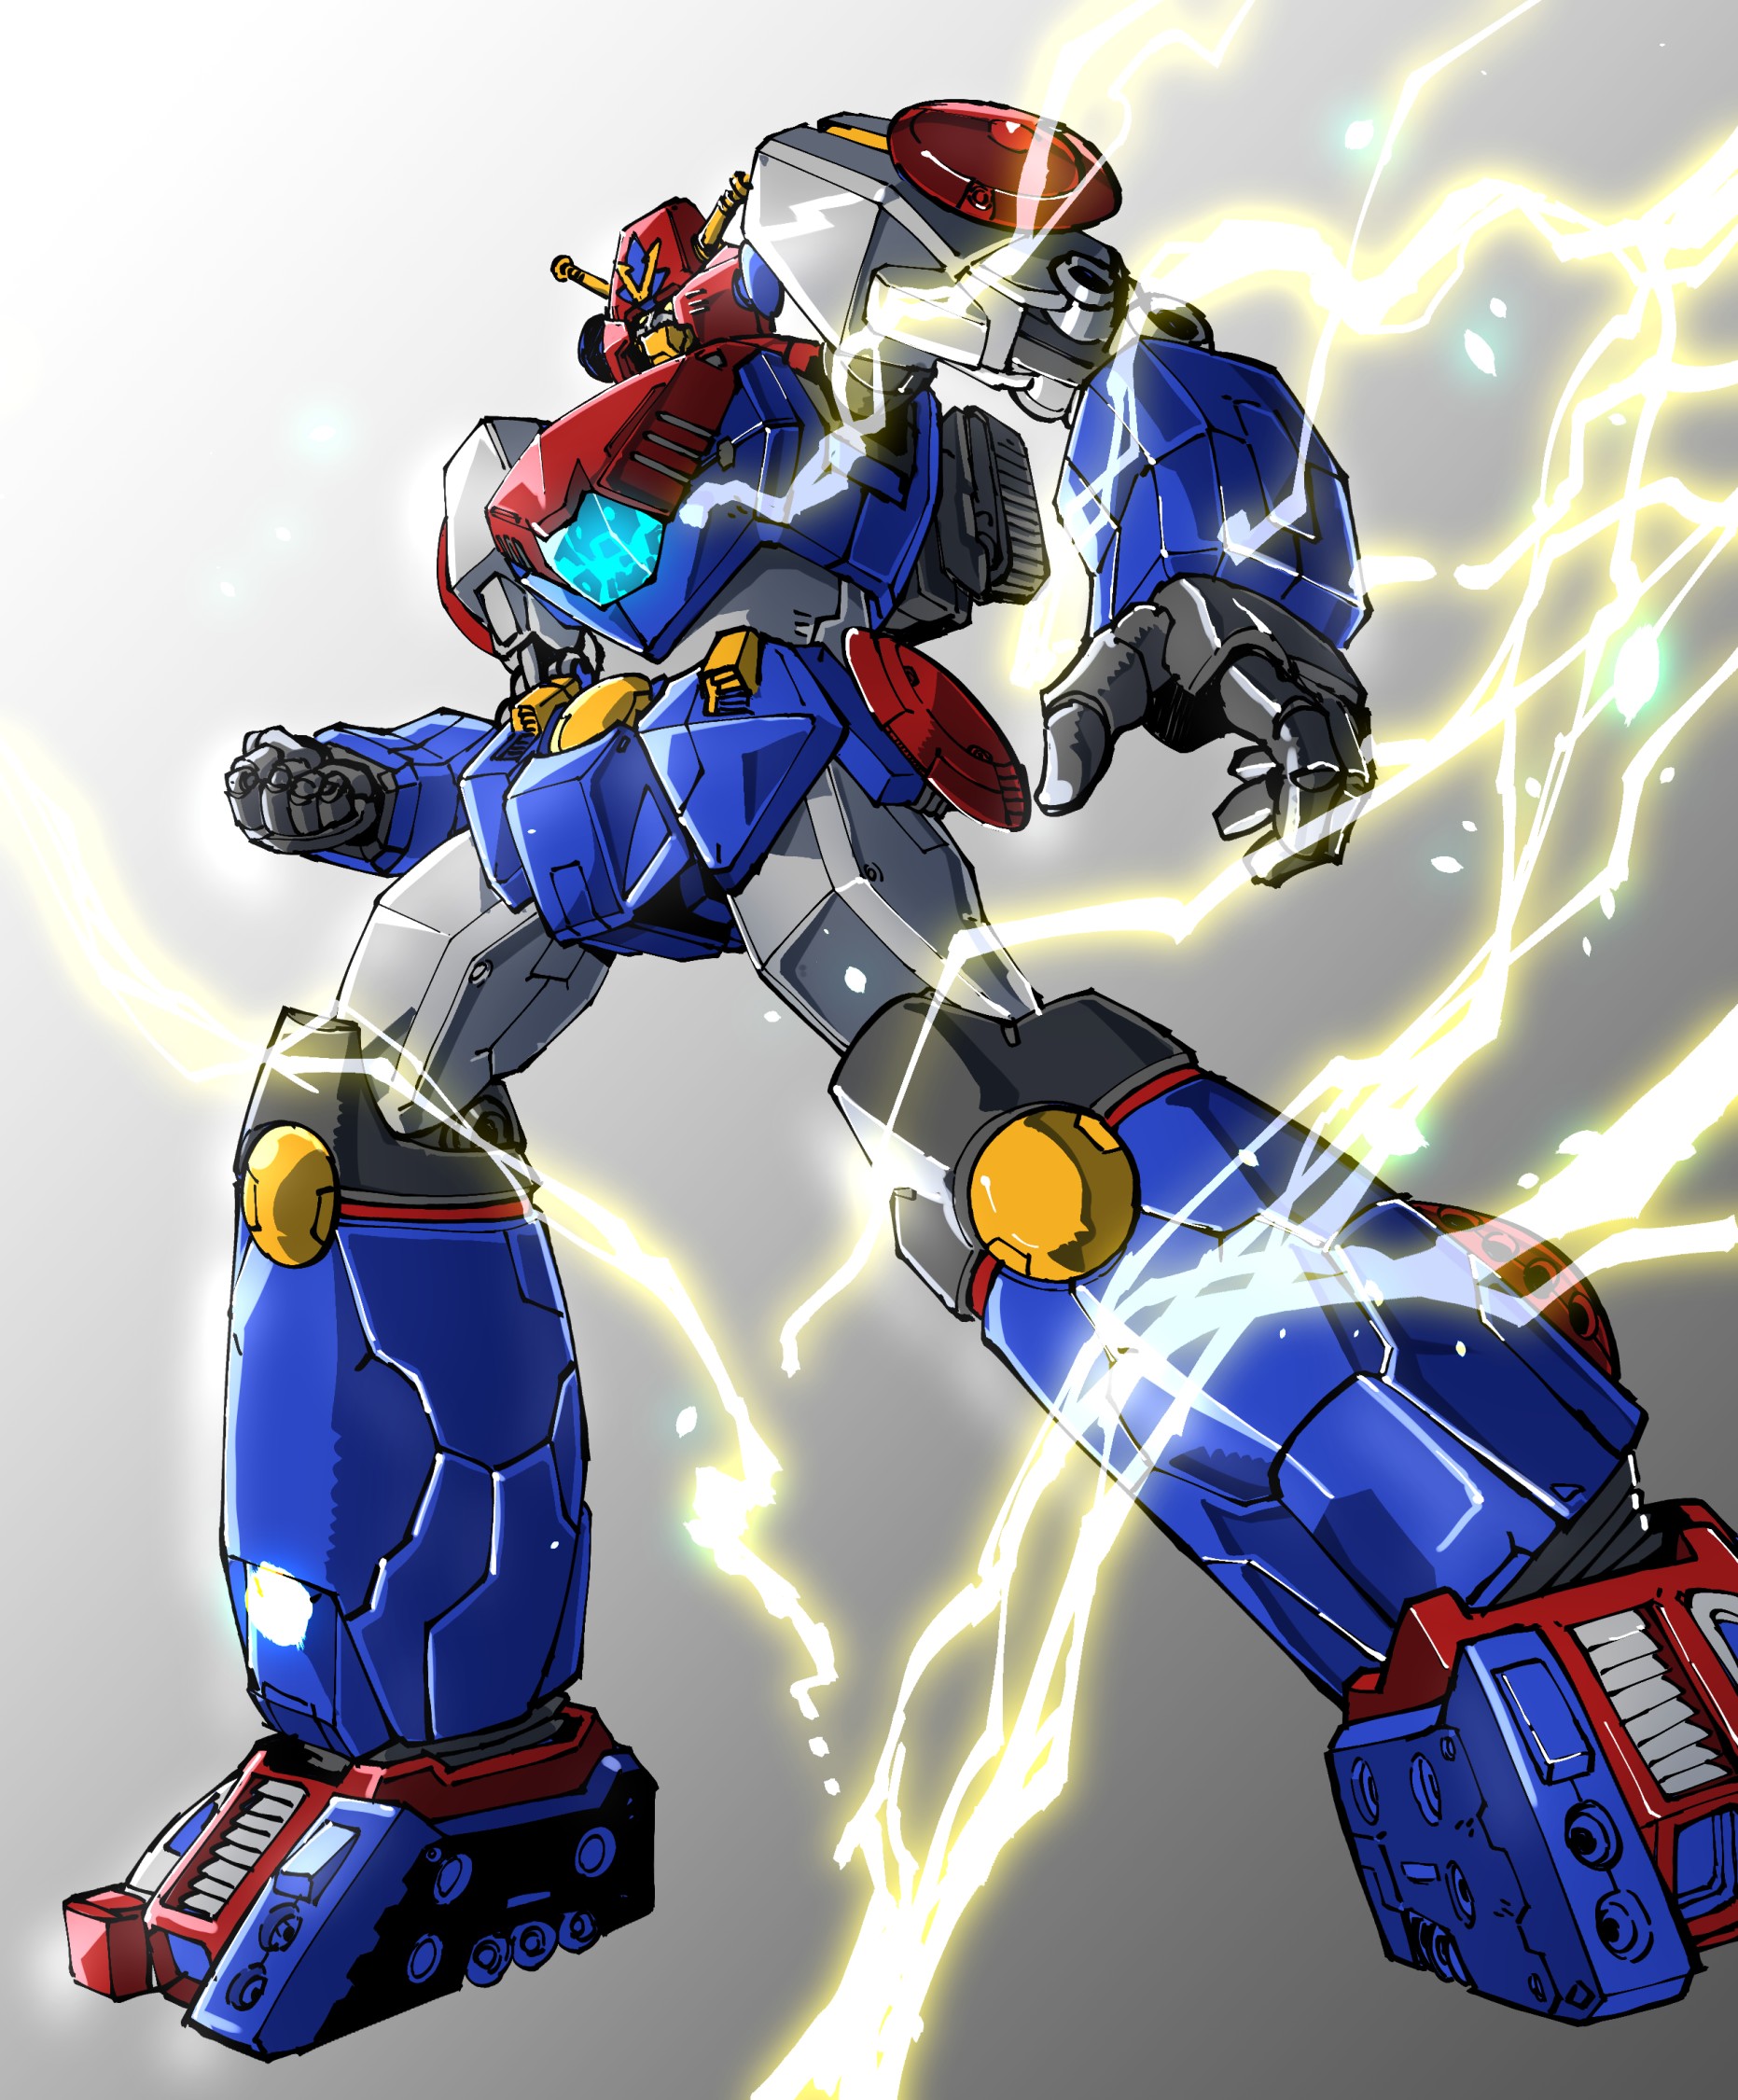 Anime 1863x2251 anime Super Robot Taisen Com Battler V Super Electromagnetic Robot Combattler V artwork digital art fan art mechs